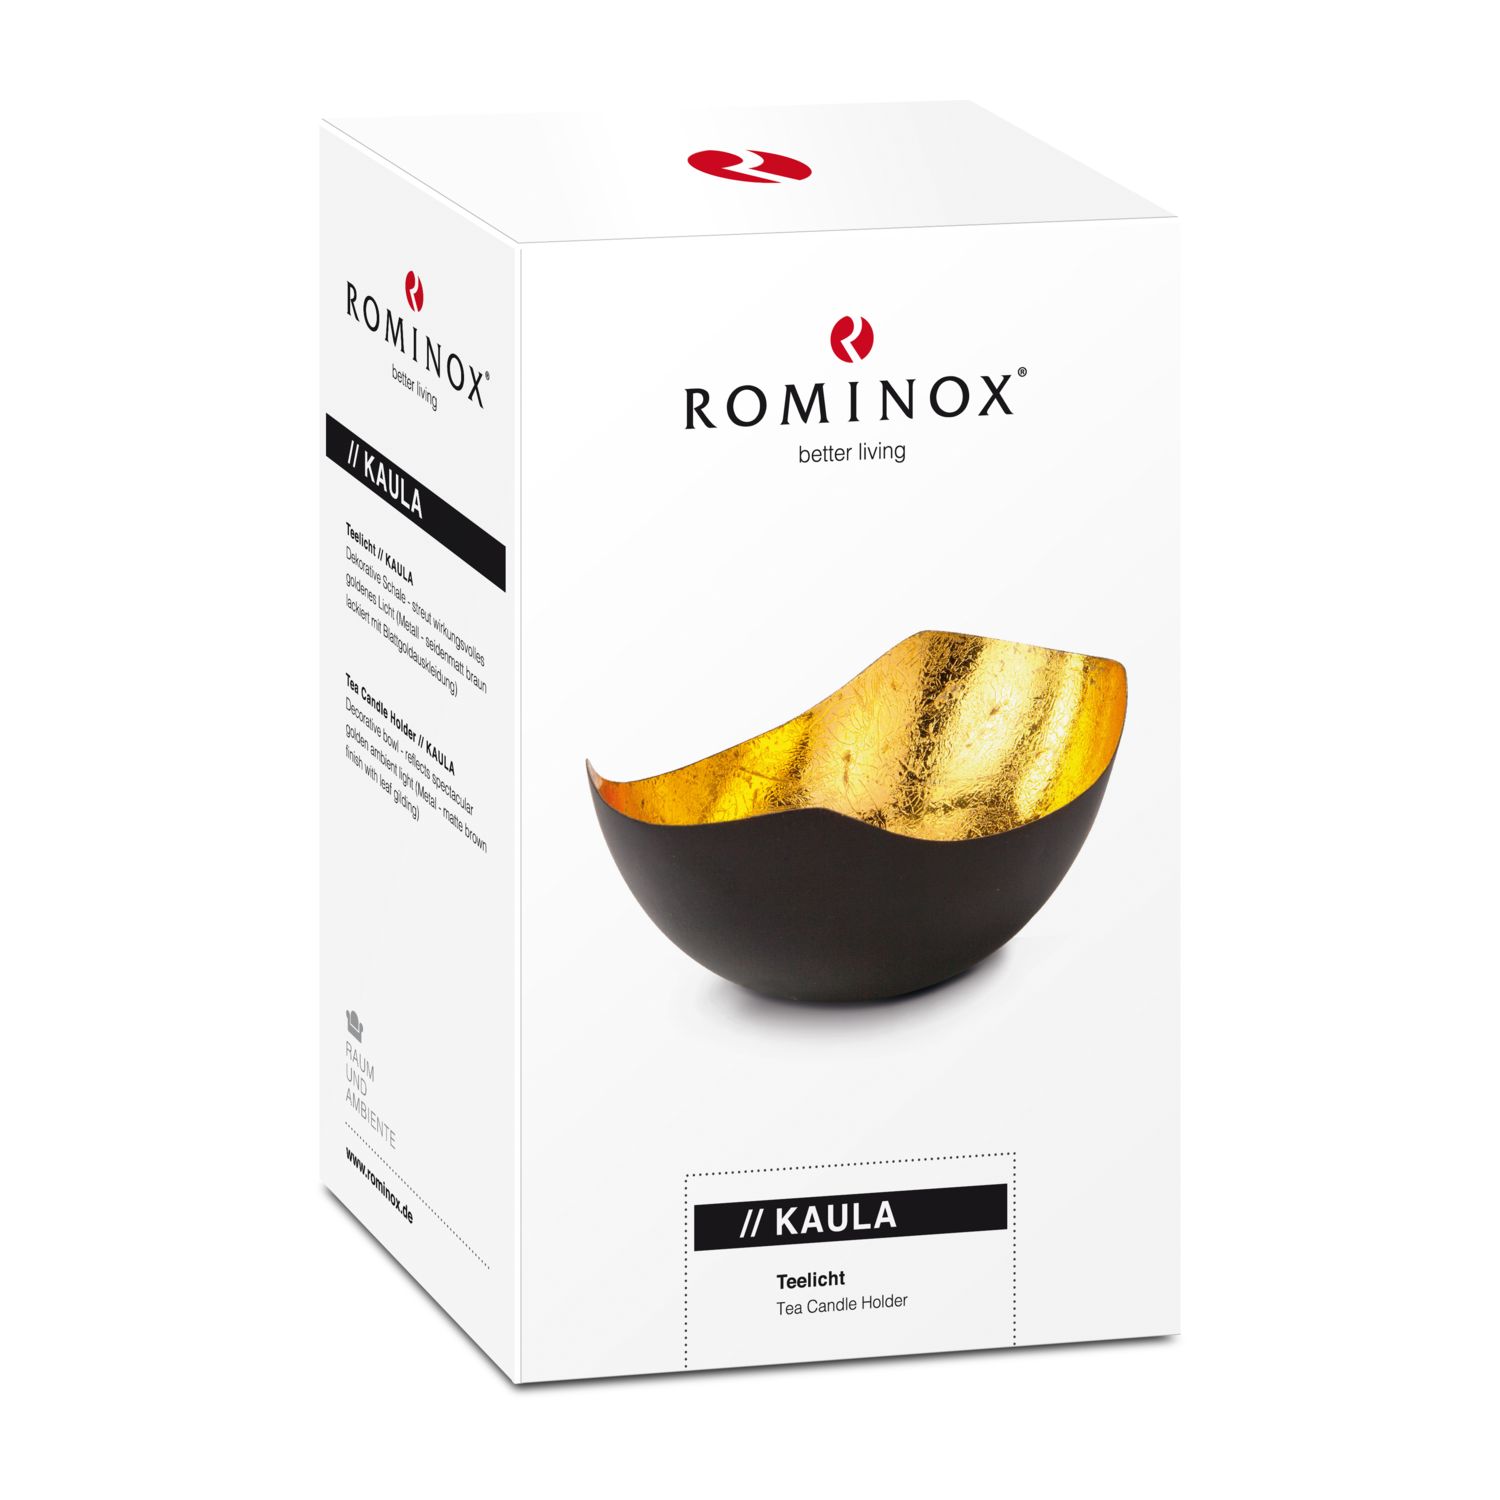 ROMINOX® Teelicht // KAULA